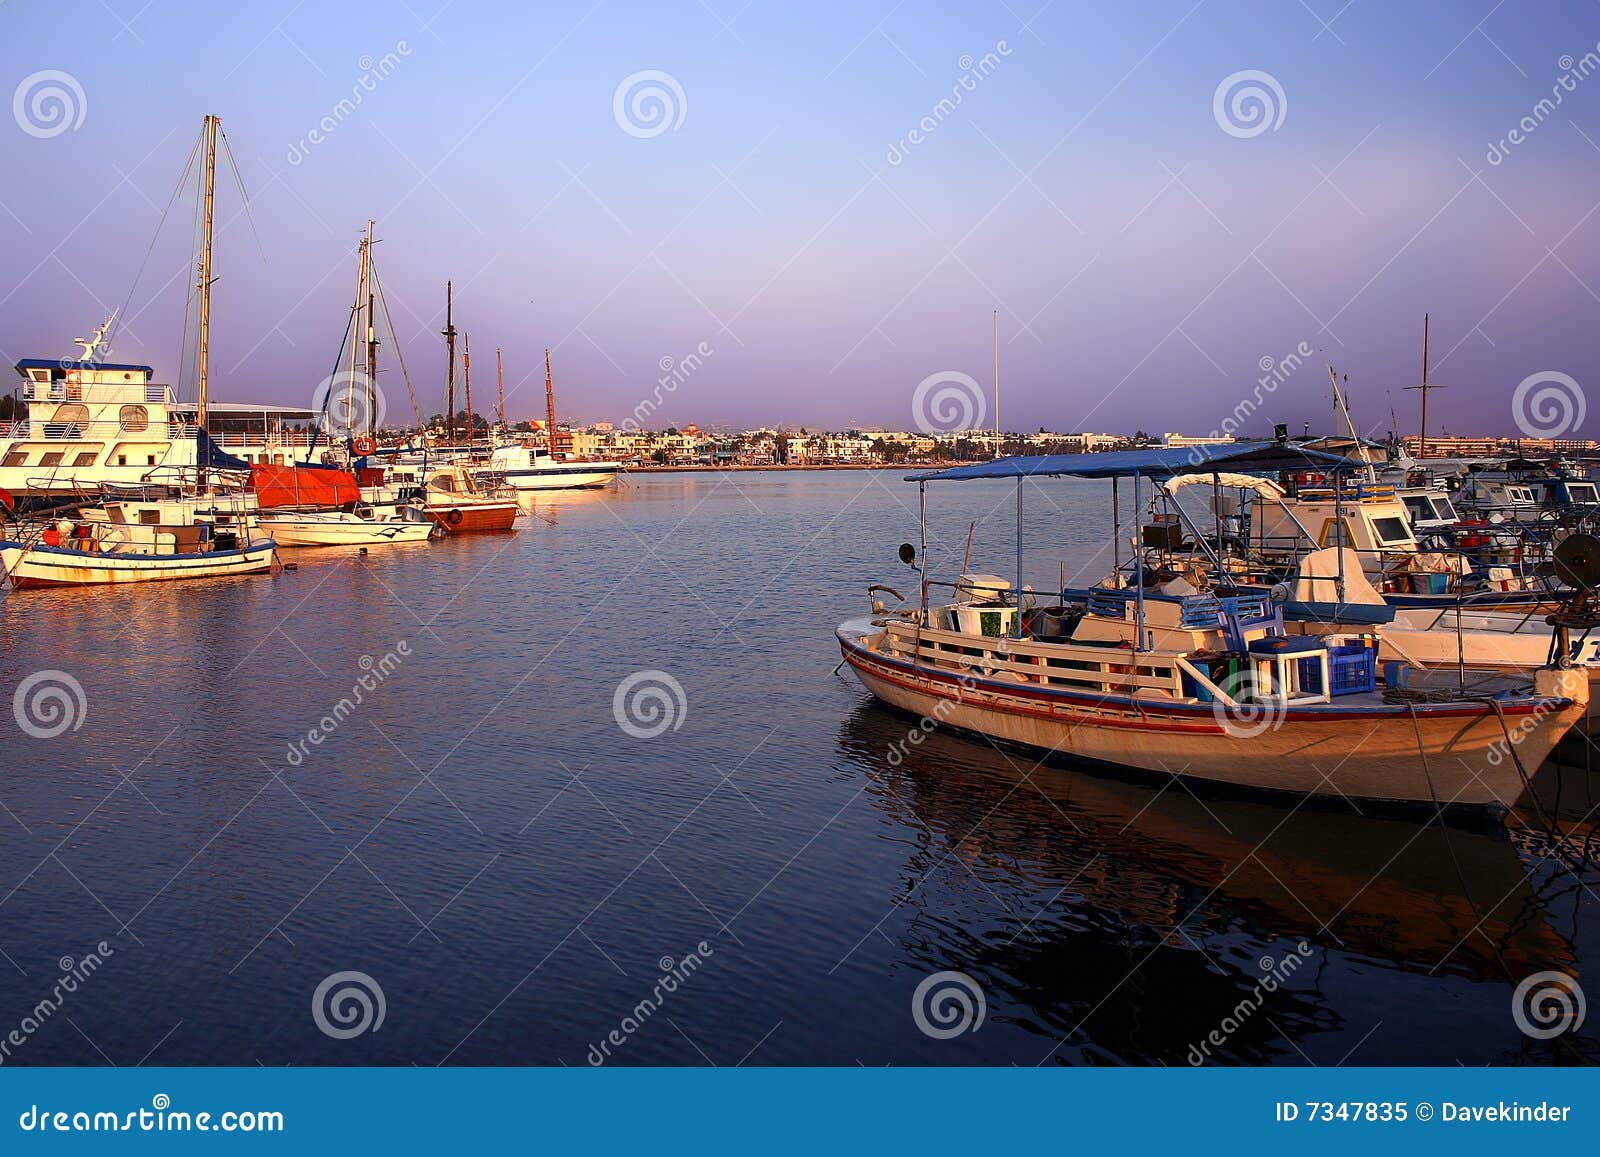 paphos harbour